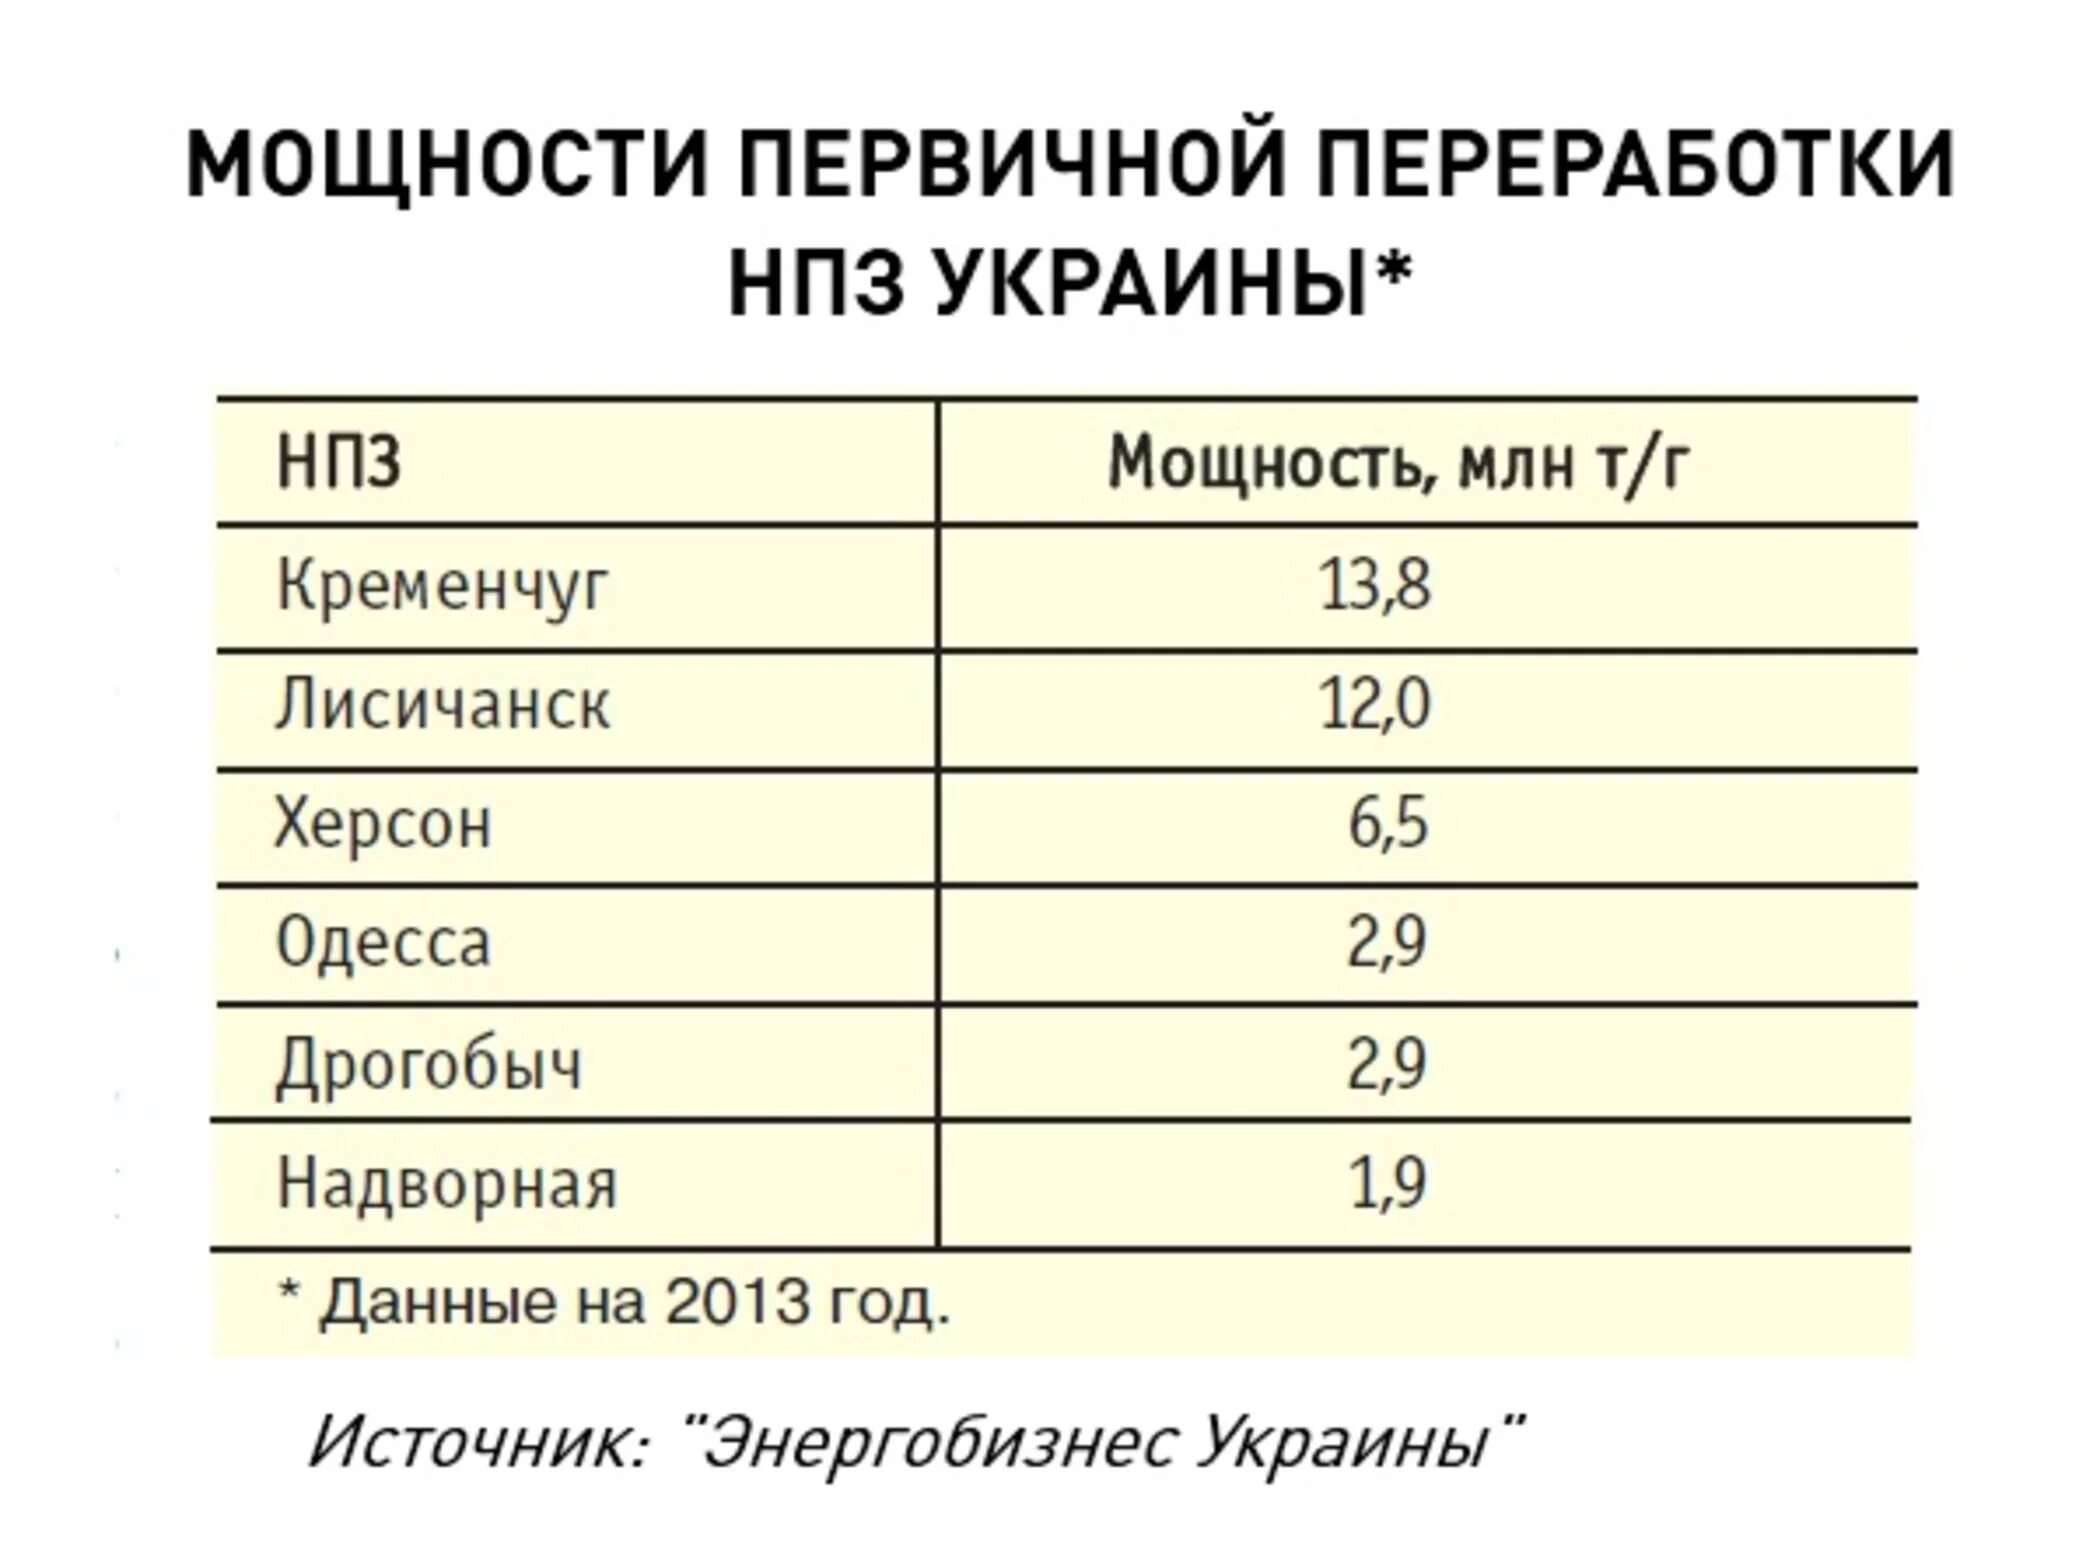 Сколько нпз в украине. НПЗ Украины мощность. Количество НПЗ на Украине. Сколько нефтеперерабатывающих заводов на Украине. Количество нефтепереработки на Украине.